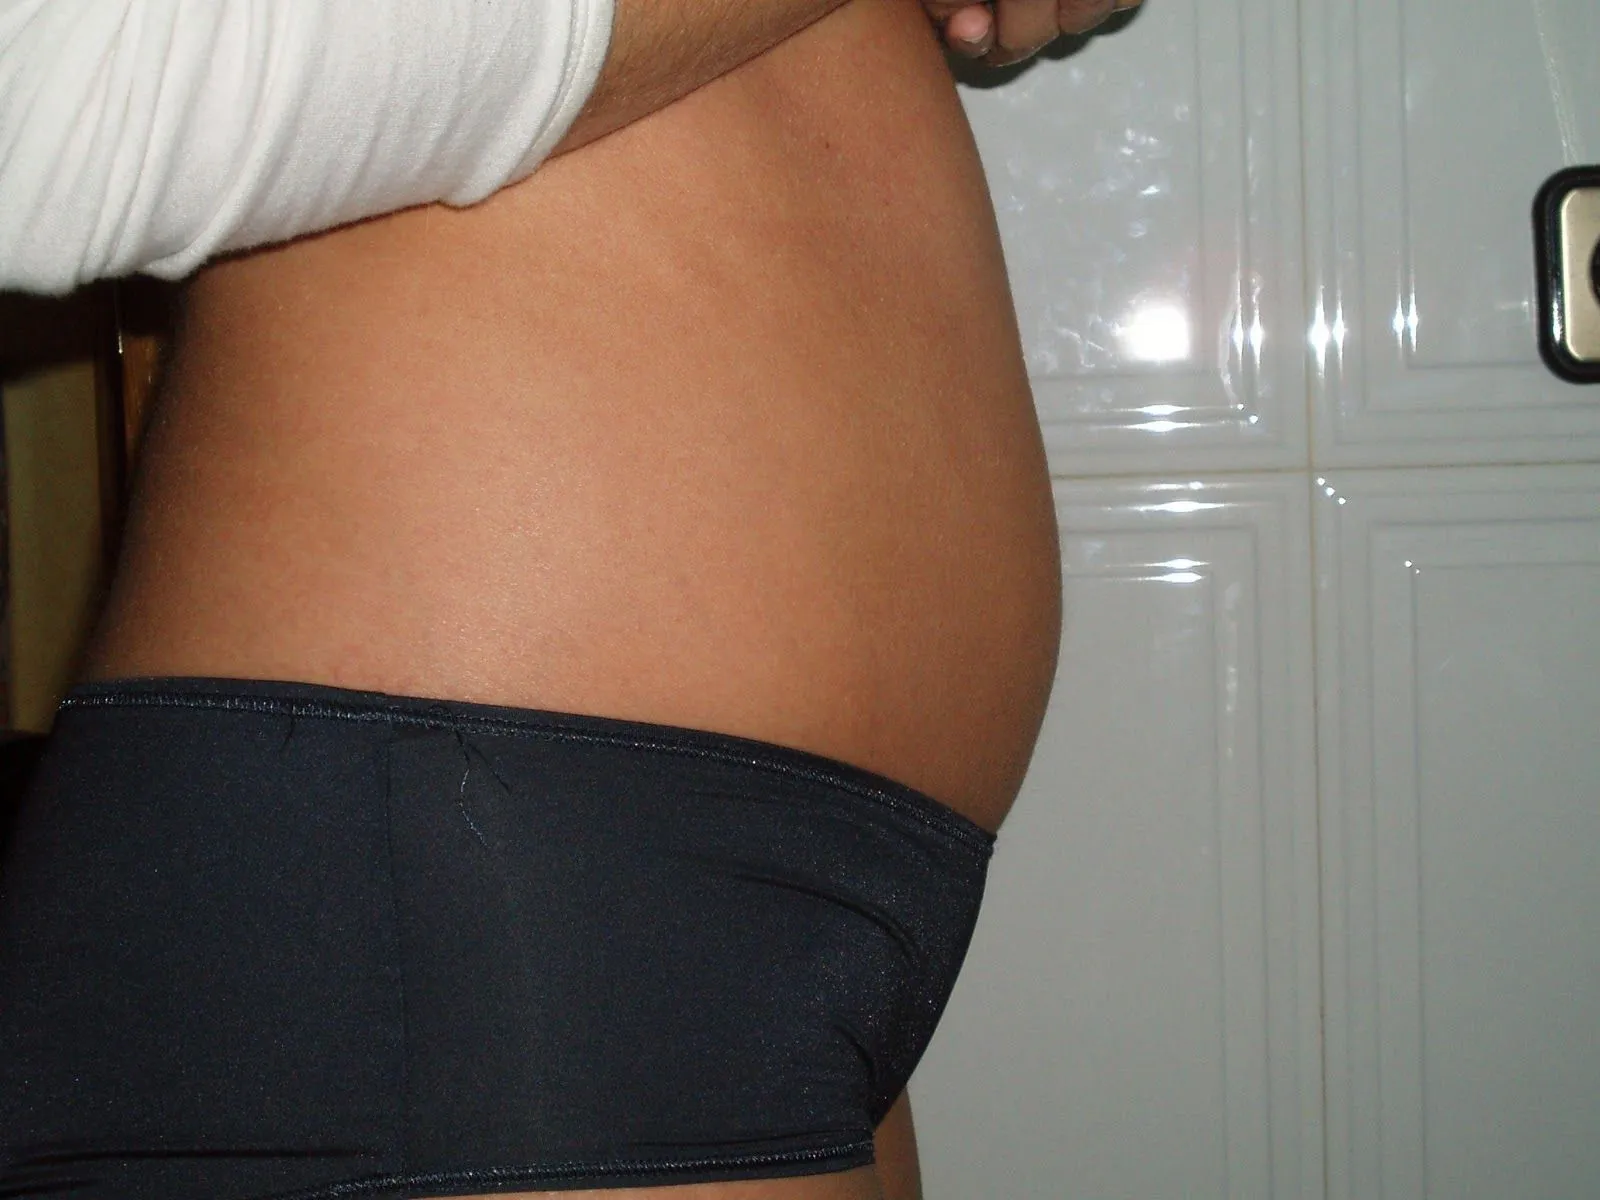 meses de embarazo